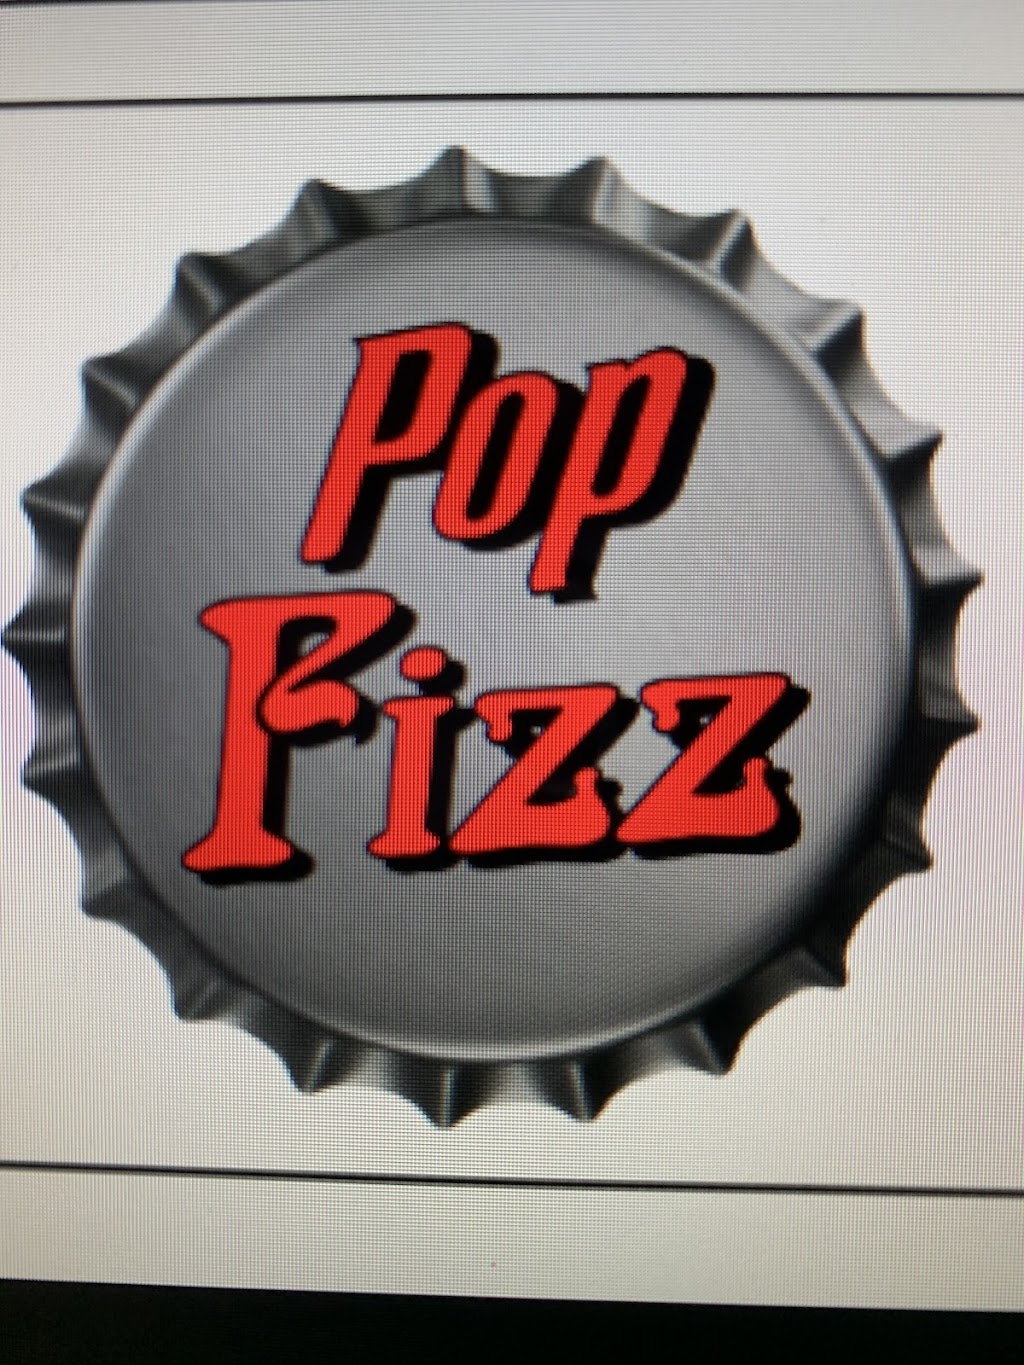 Pop Fizz Craft Sodas | 2919 US-206, Columbus, NJ 08022 | Phone: (609) 477-3971